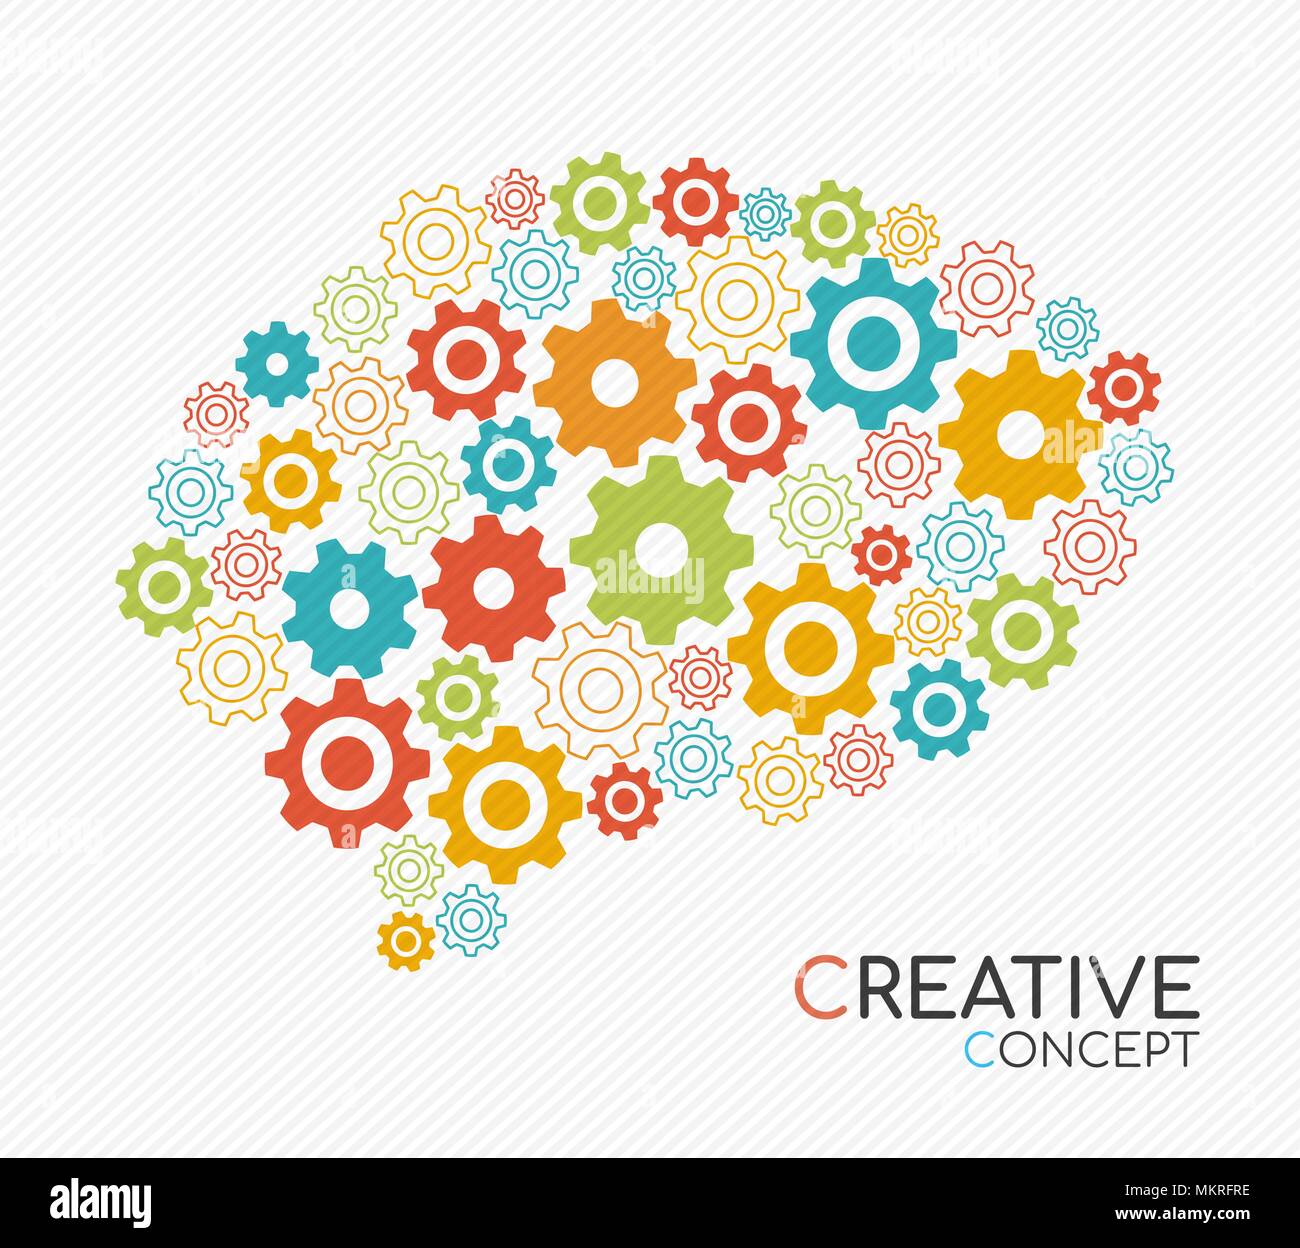 Il pensiero creativo concetto illustrazione del cervello umano con colorati ruote dentate in moderno stile di contorno per il processo di creatività. EPS10 vettore. Illustrazione Vettoriale